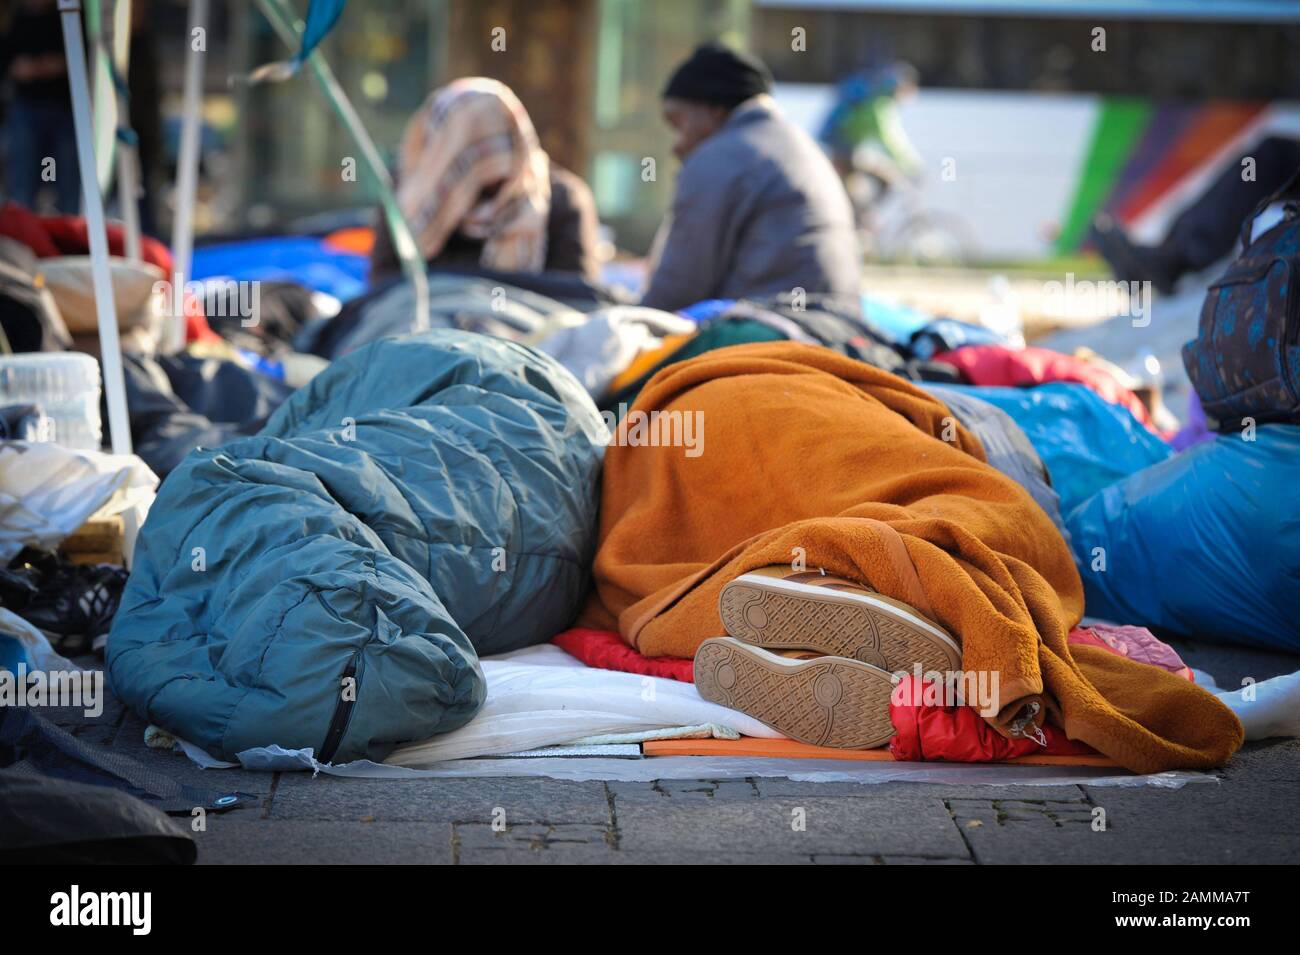 Avec un camp de protestation et une grève de la faim à Sendlinger-Tor-Platz, les réfugiés manifestent pour l'égalité des droits et le "droit de rester pour tous". [traduction automatique] Banque D'Images